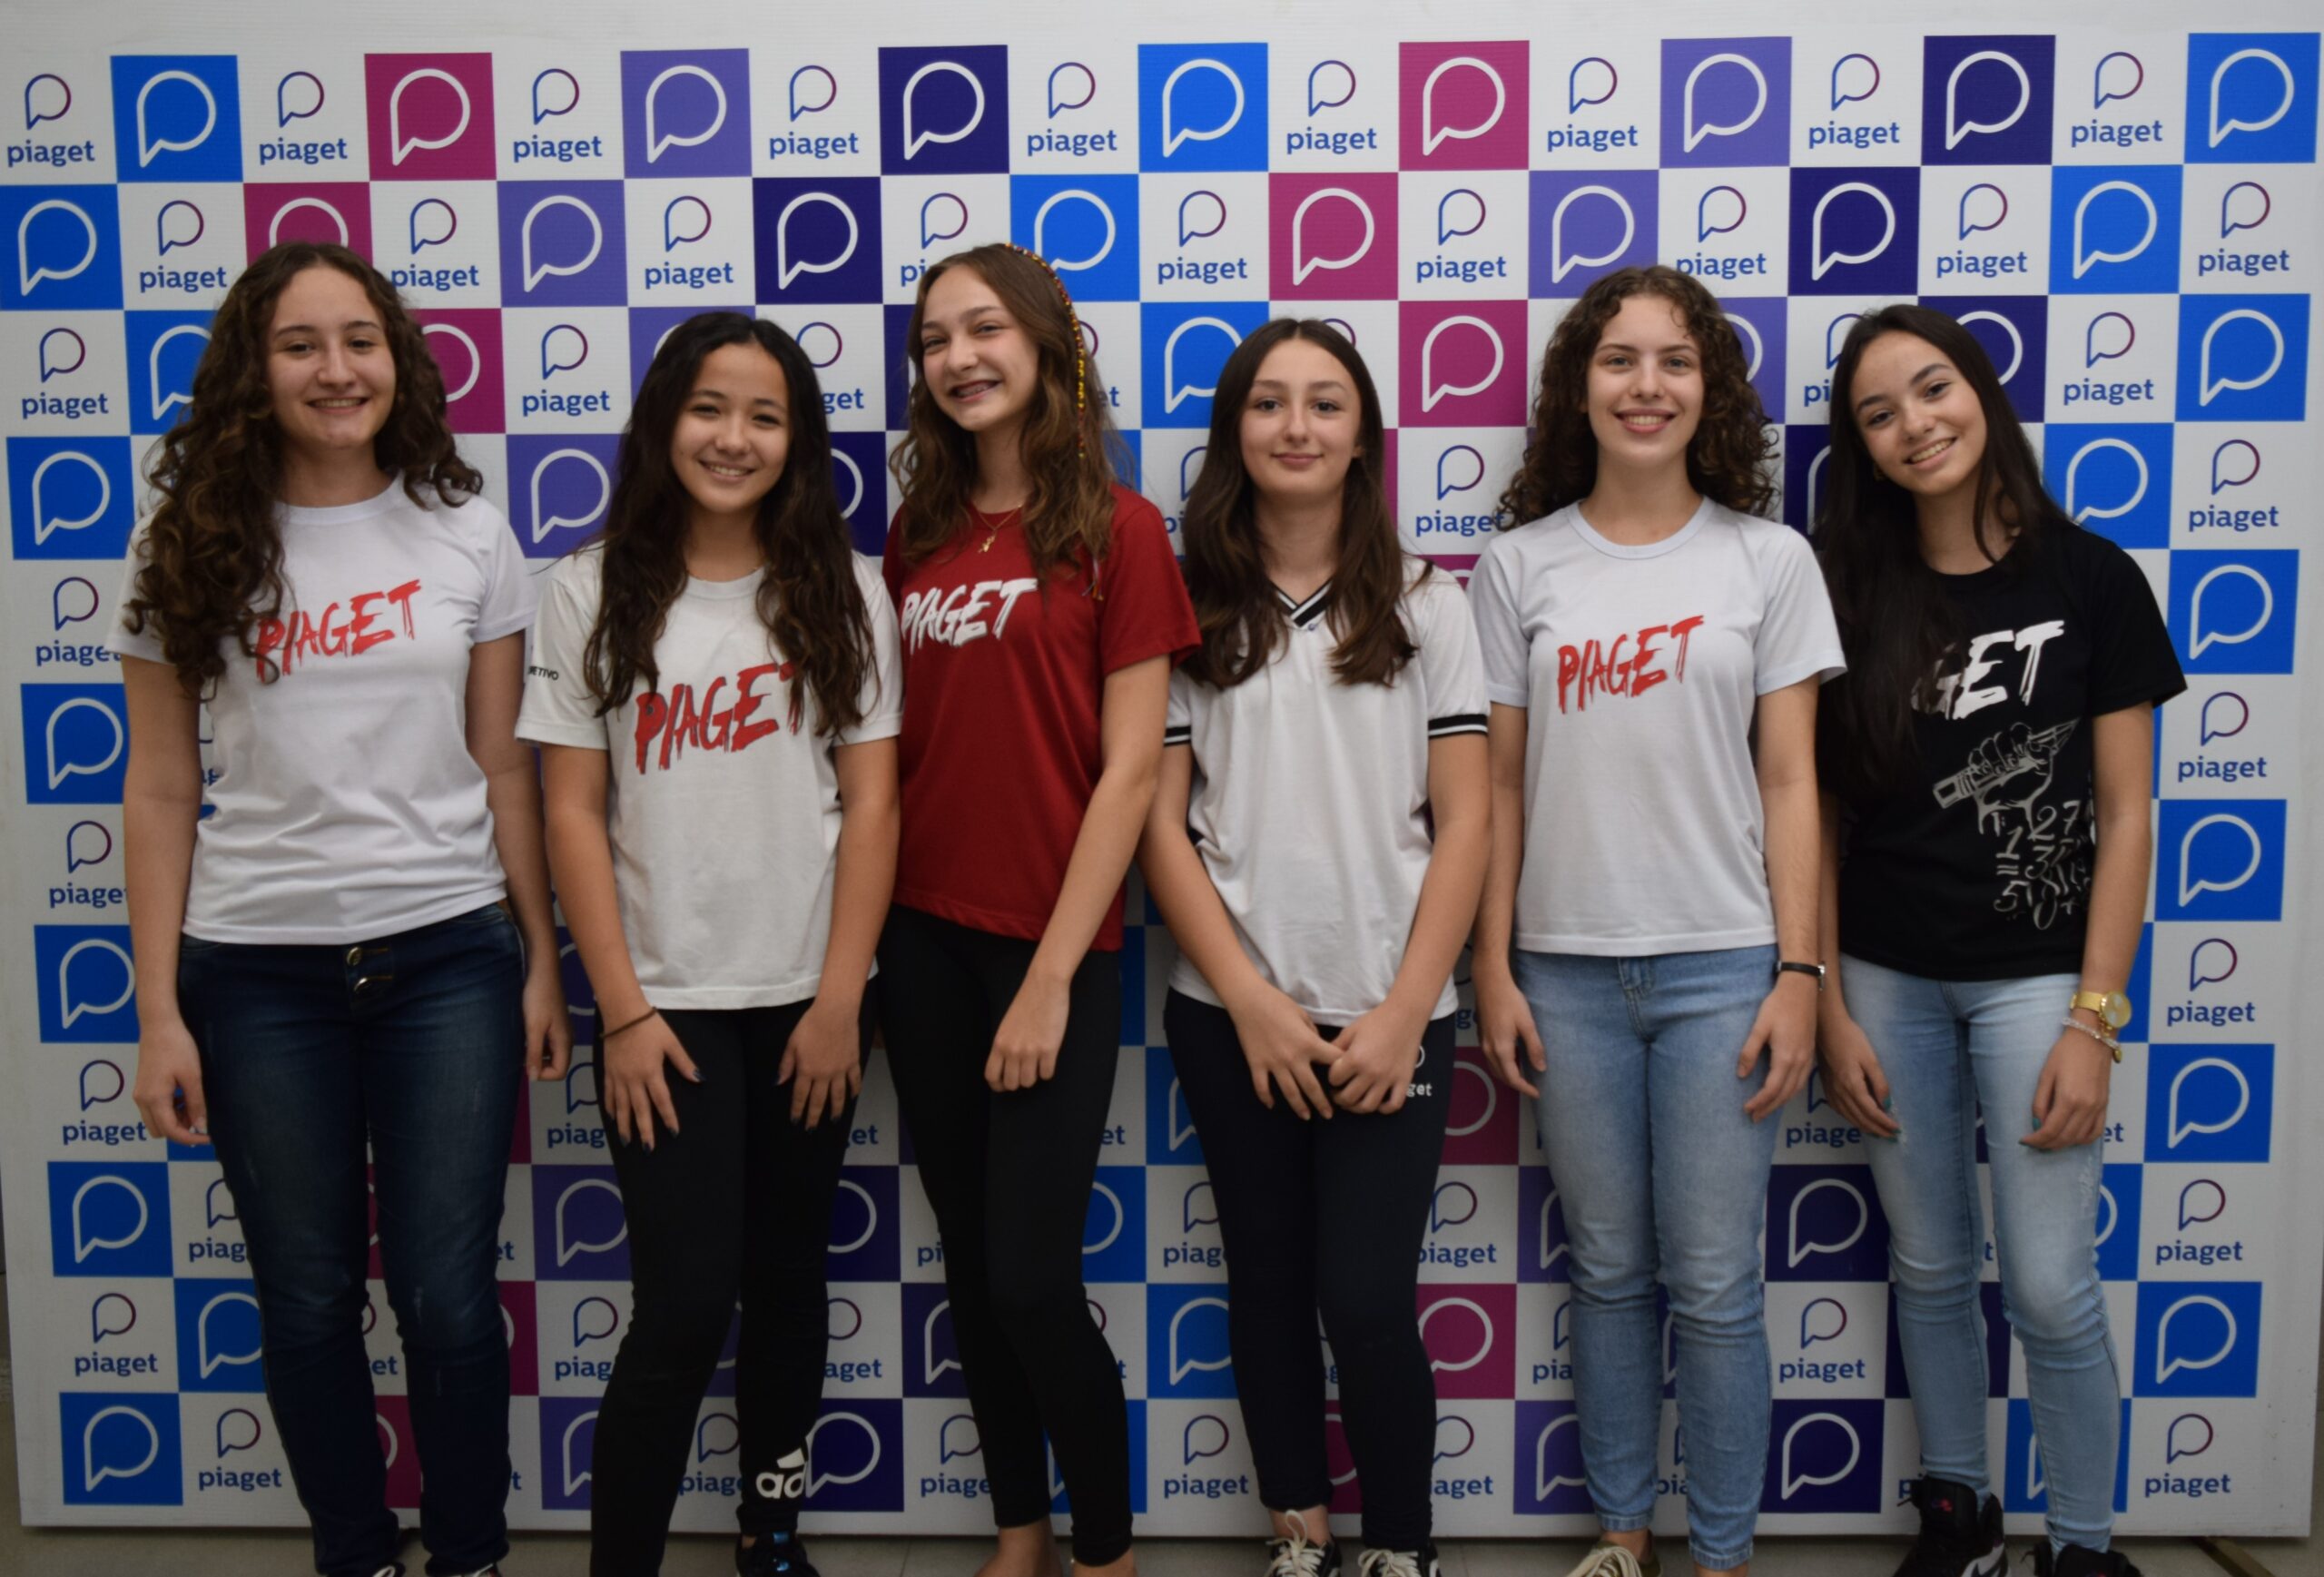 Nove alunos do Colégio estão na 2ª fase da Olimpíada Brasileira de Física –  Colégio Jean Piaget